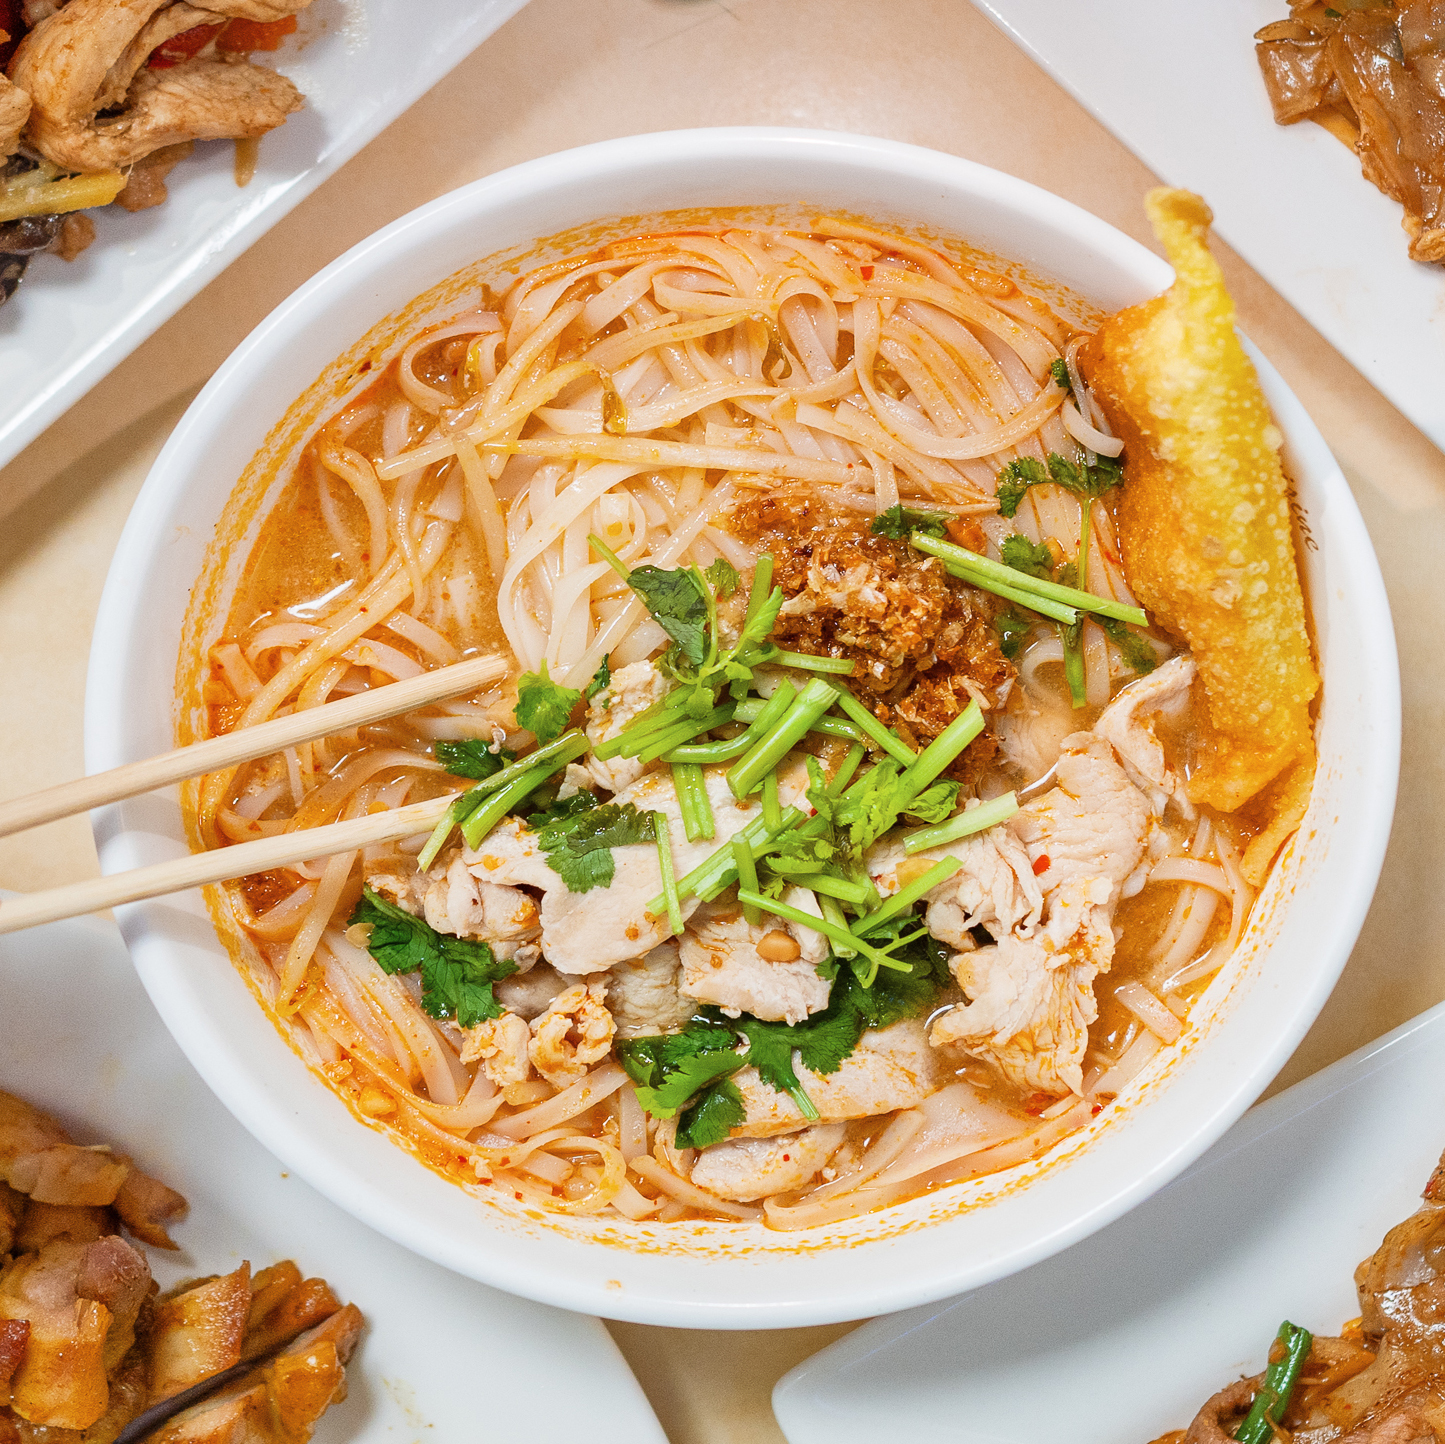 Dish 3 - Tom Yum Noodle Soup